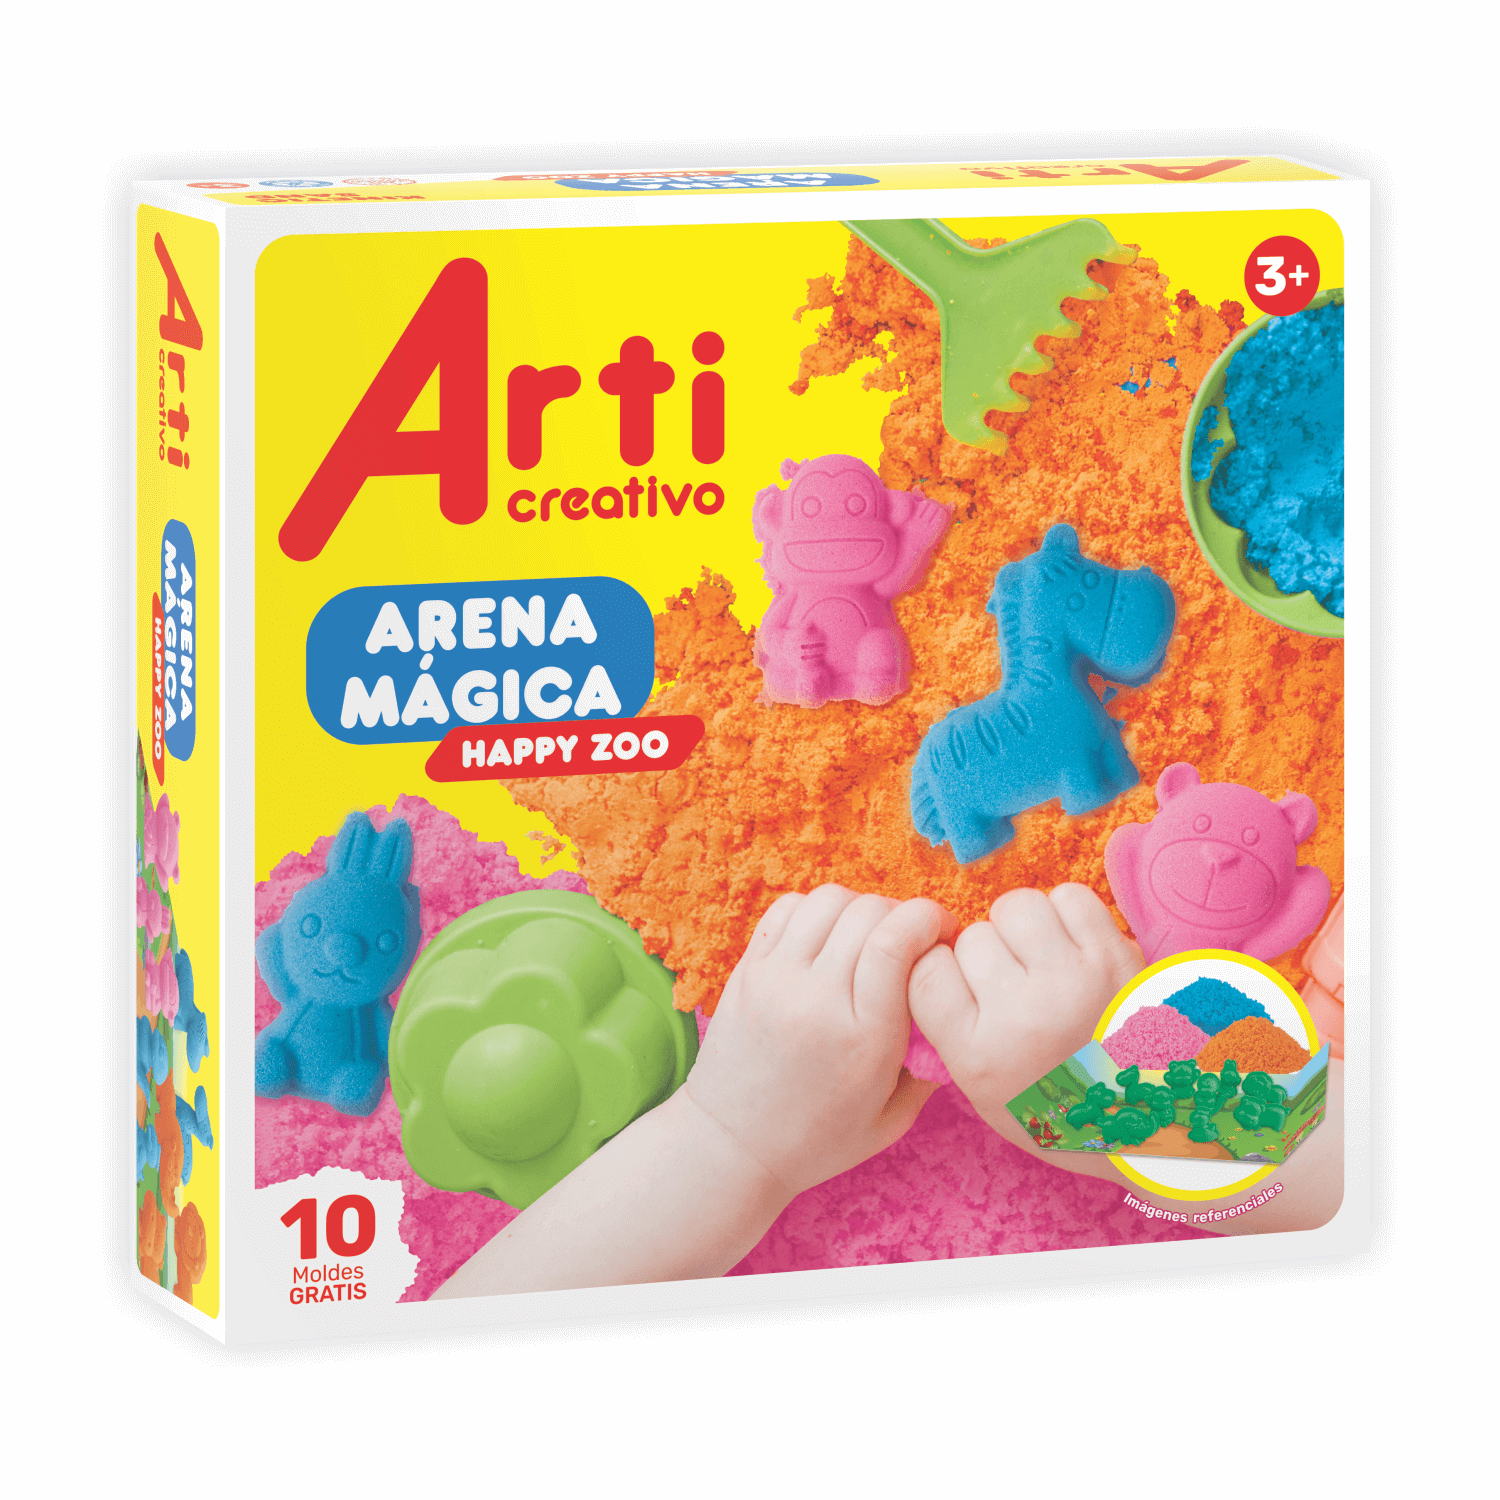 Arena Mágica ARTI CREATIVO Glitter Dino